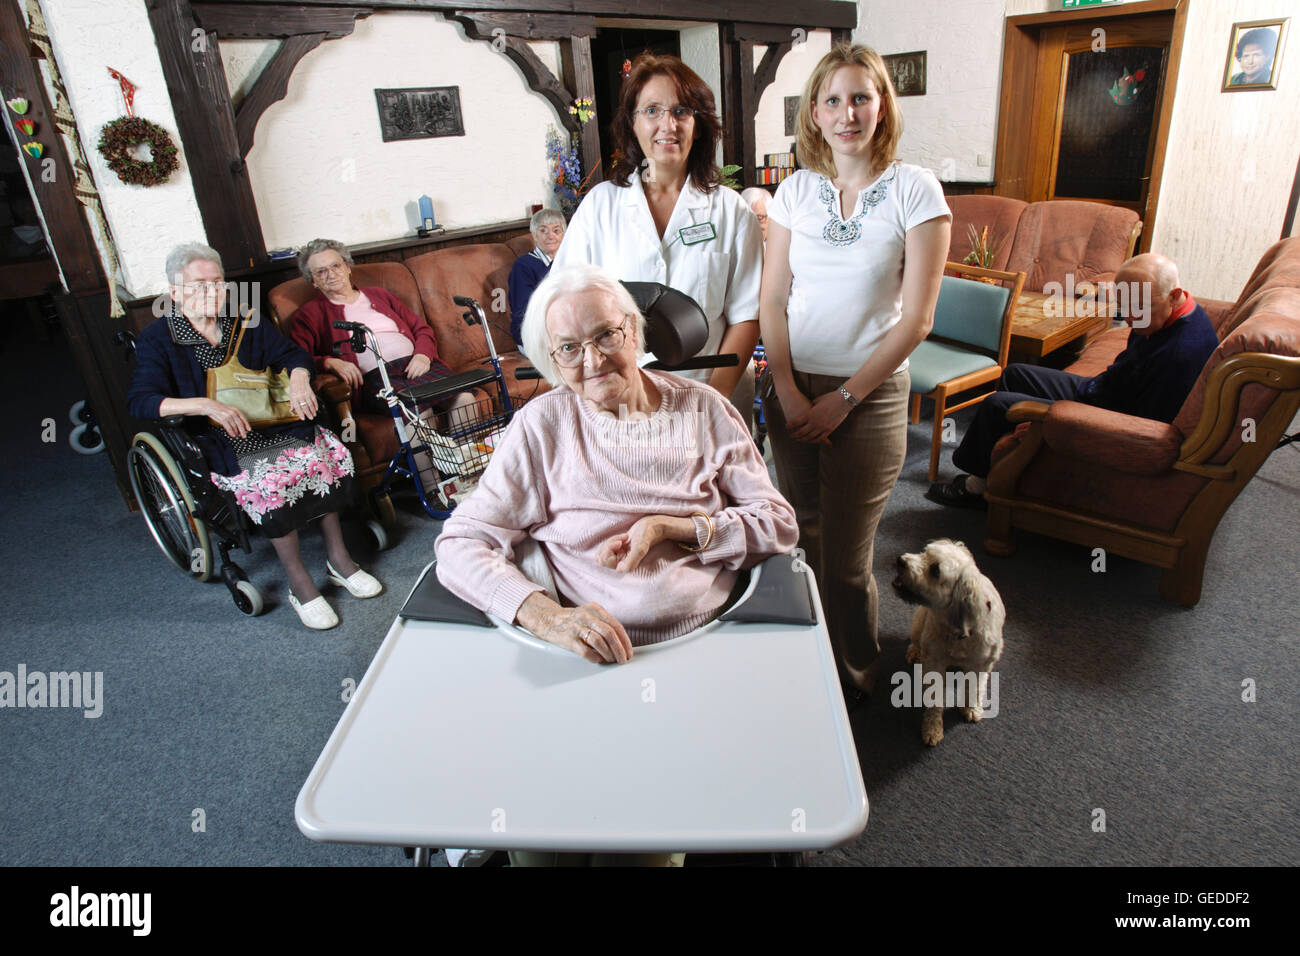 Los residentes y cuidadores, el personal de enfermería en la sala común de un hogar de ancianos Foto de stock